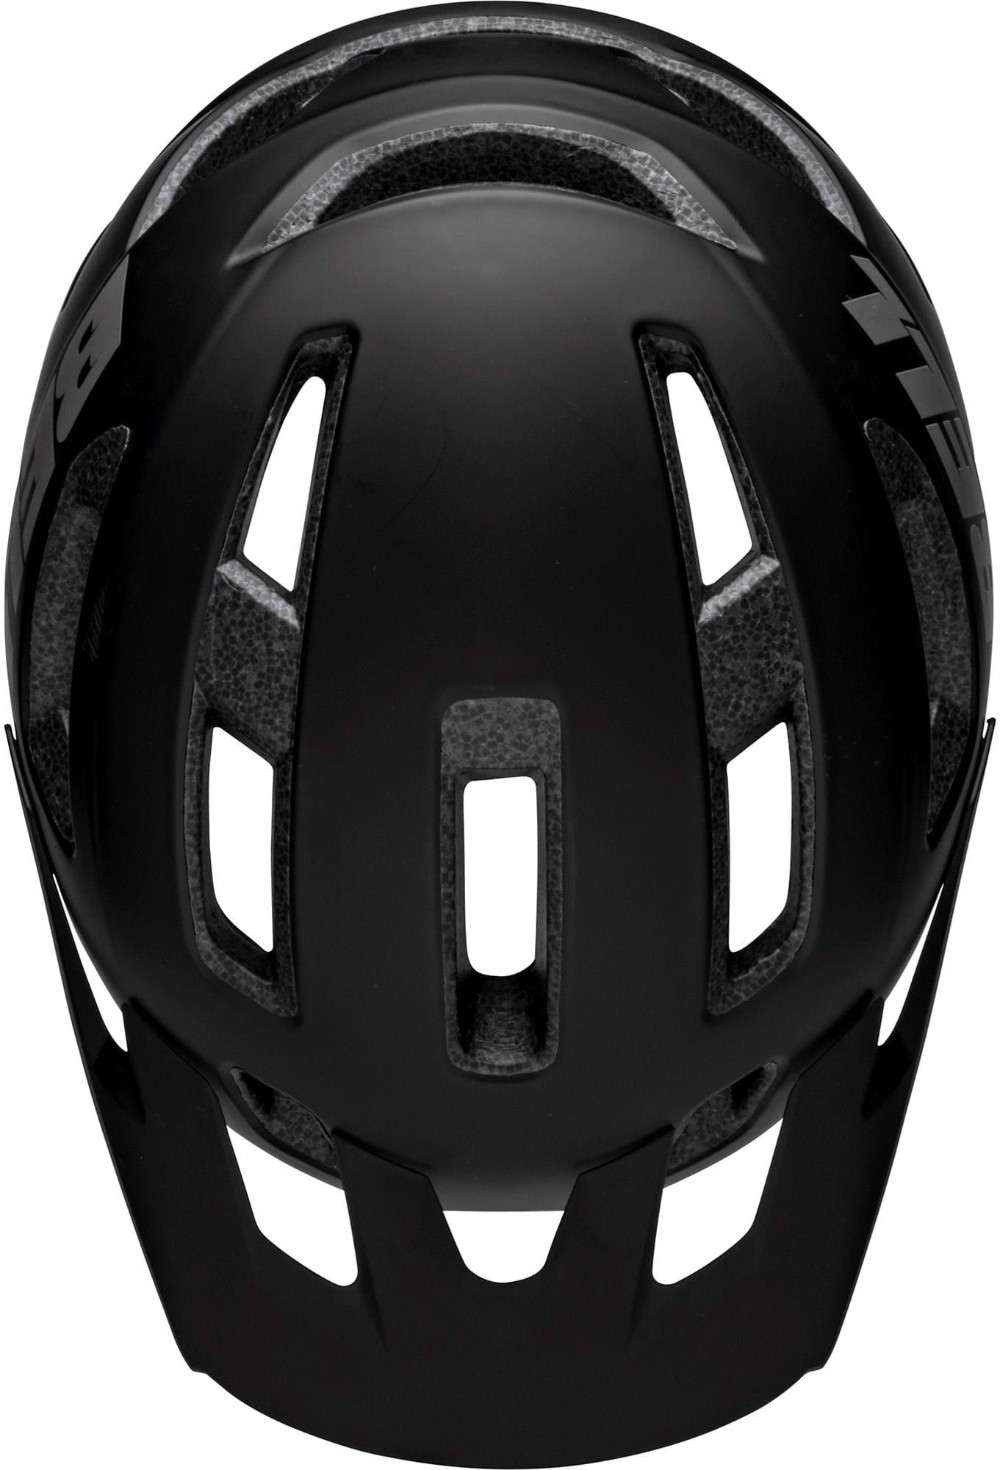 Nomad 2 Mips MTB Helmet image 1